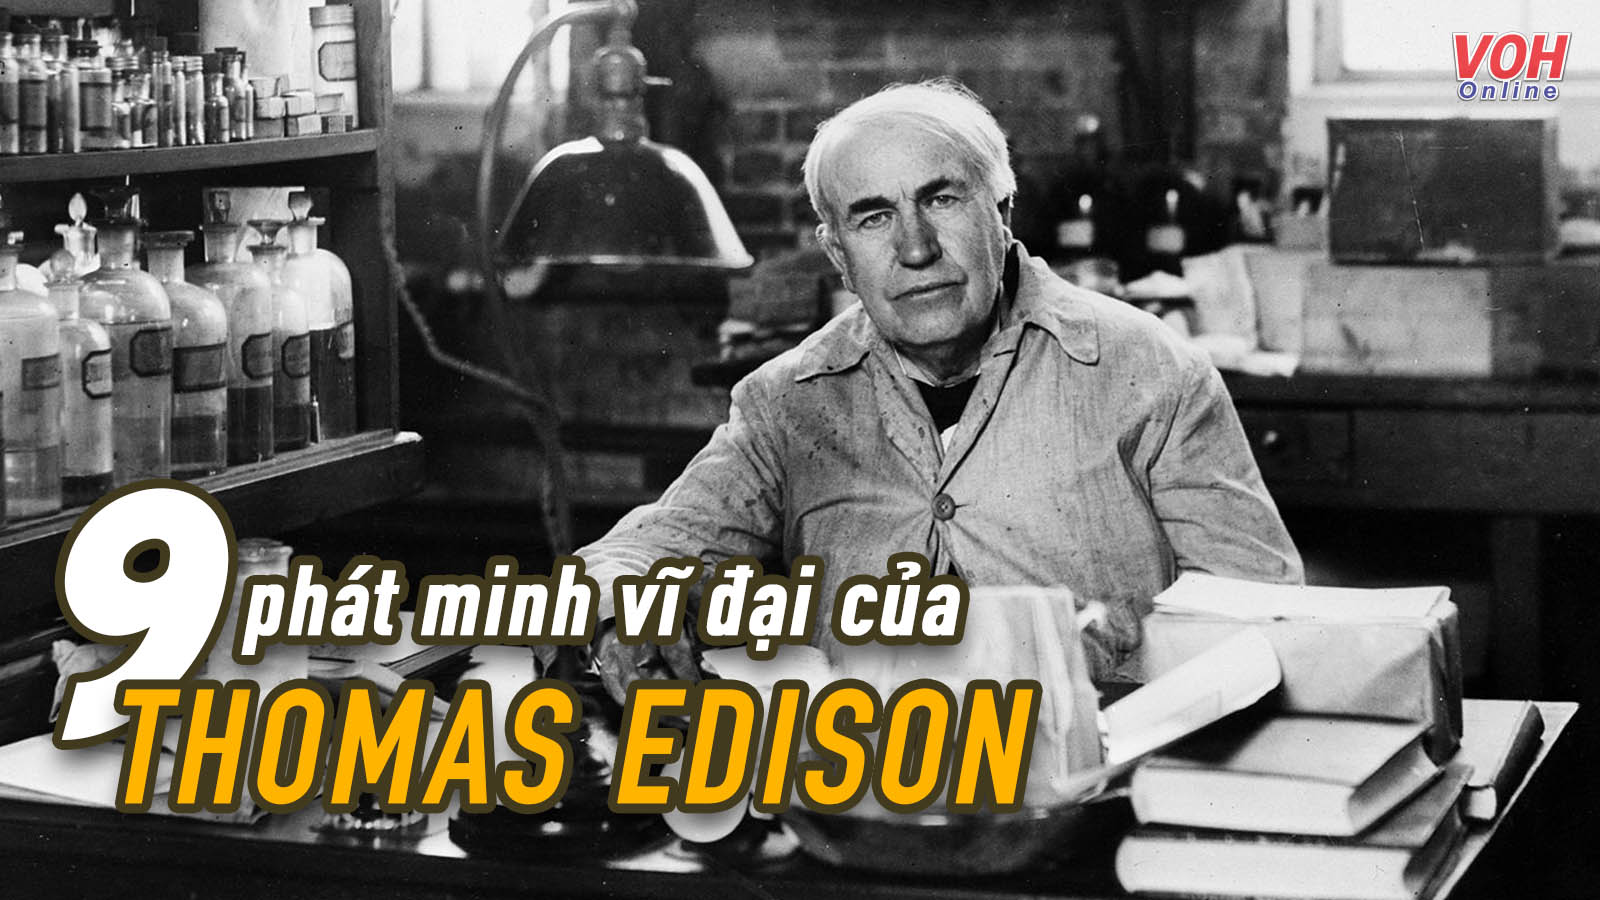 9 phát minh đã làm thay đổi thế giới của Thomas Edison, là những thứ chúng ta sử dụng hằng ngày!